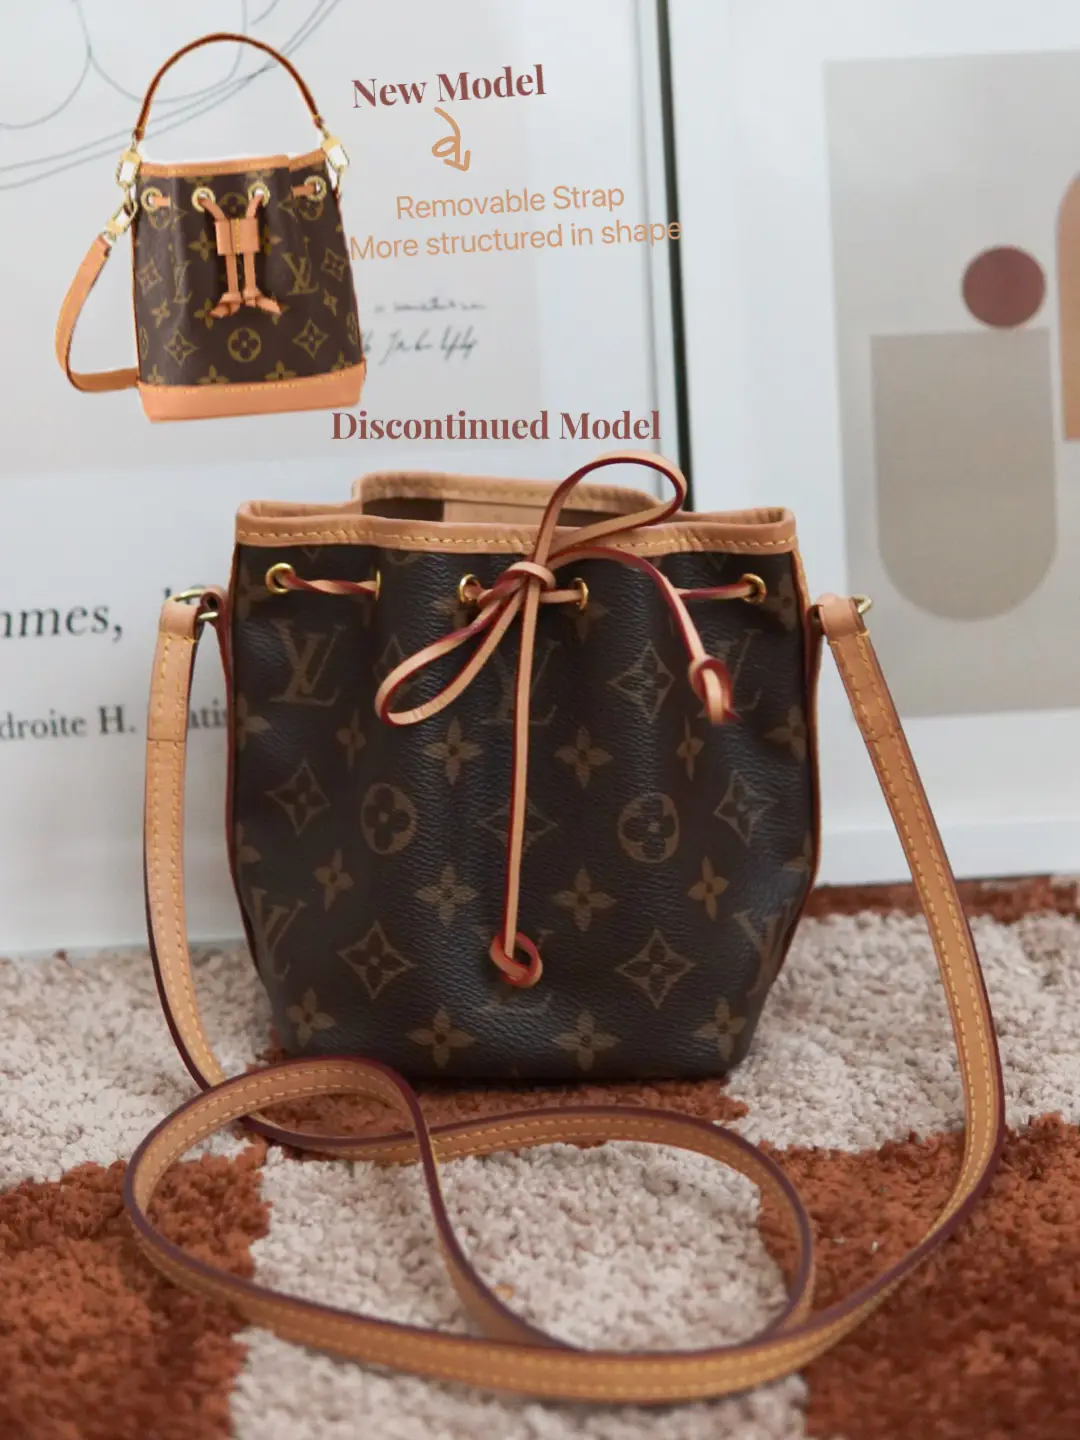 My only LV bag - my little nano noe! : r/luxurypurses